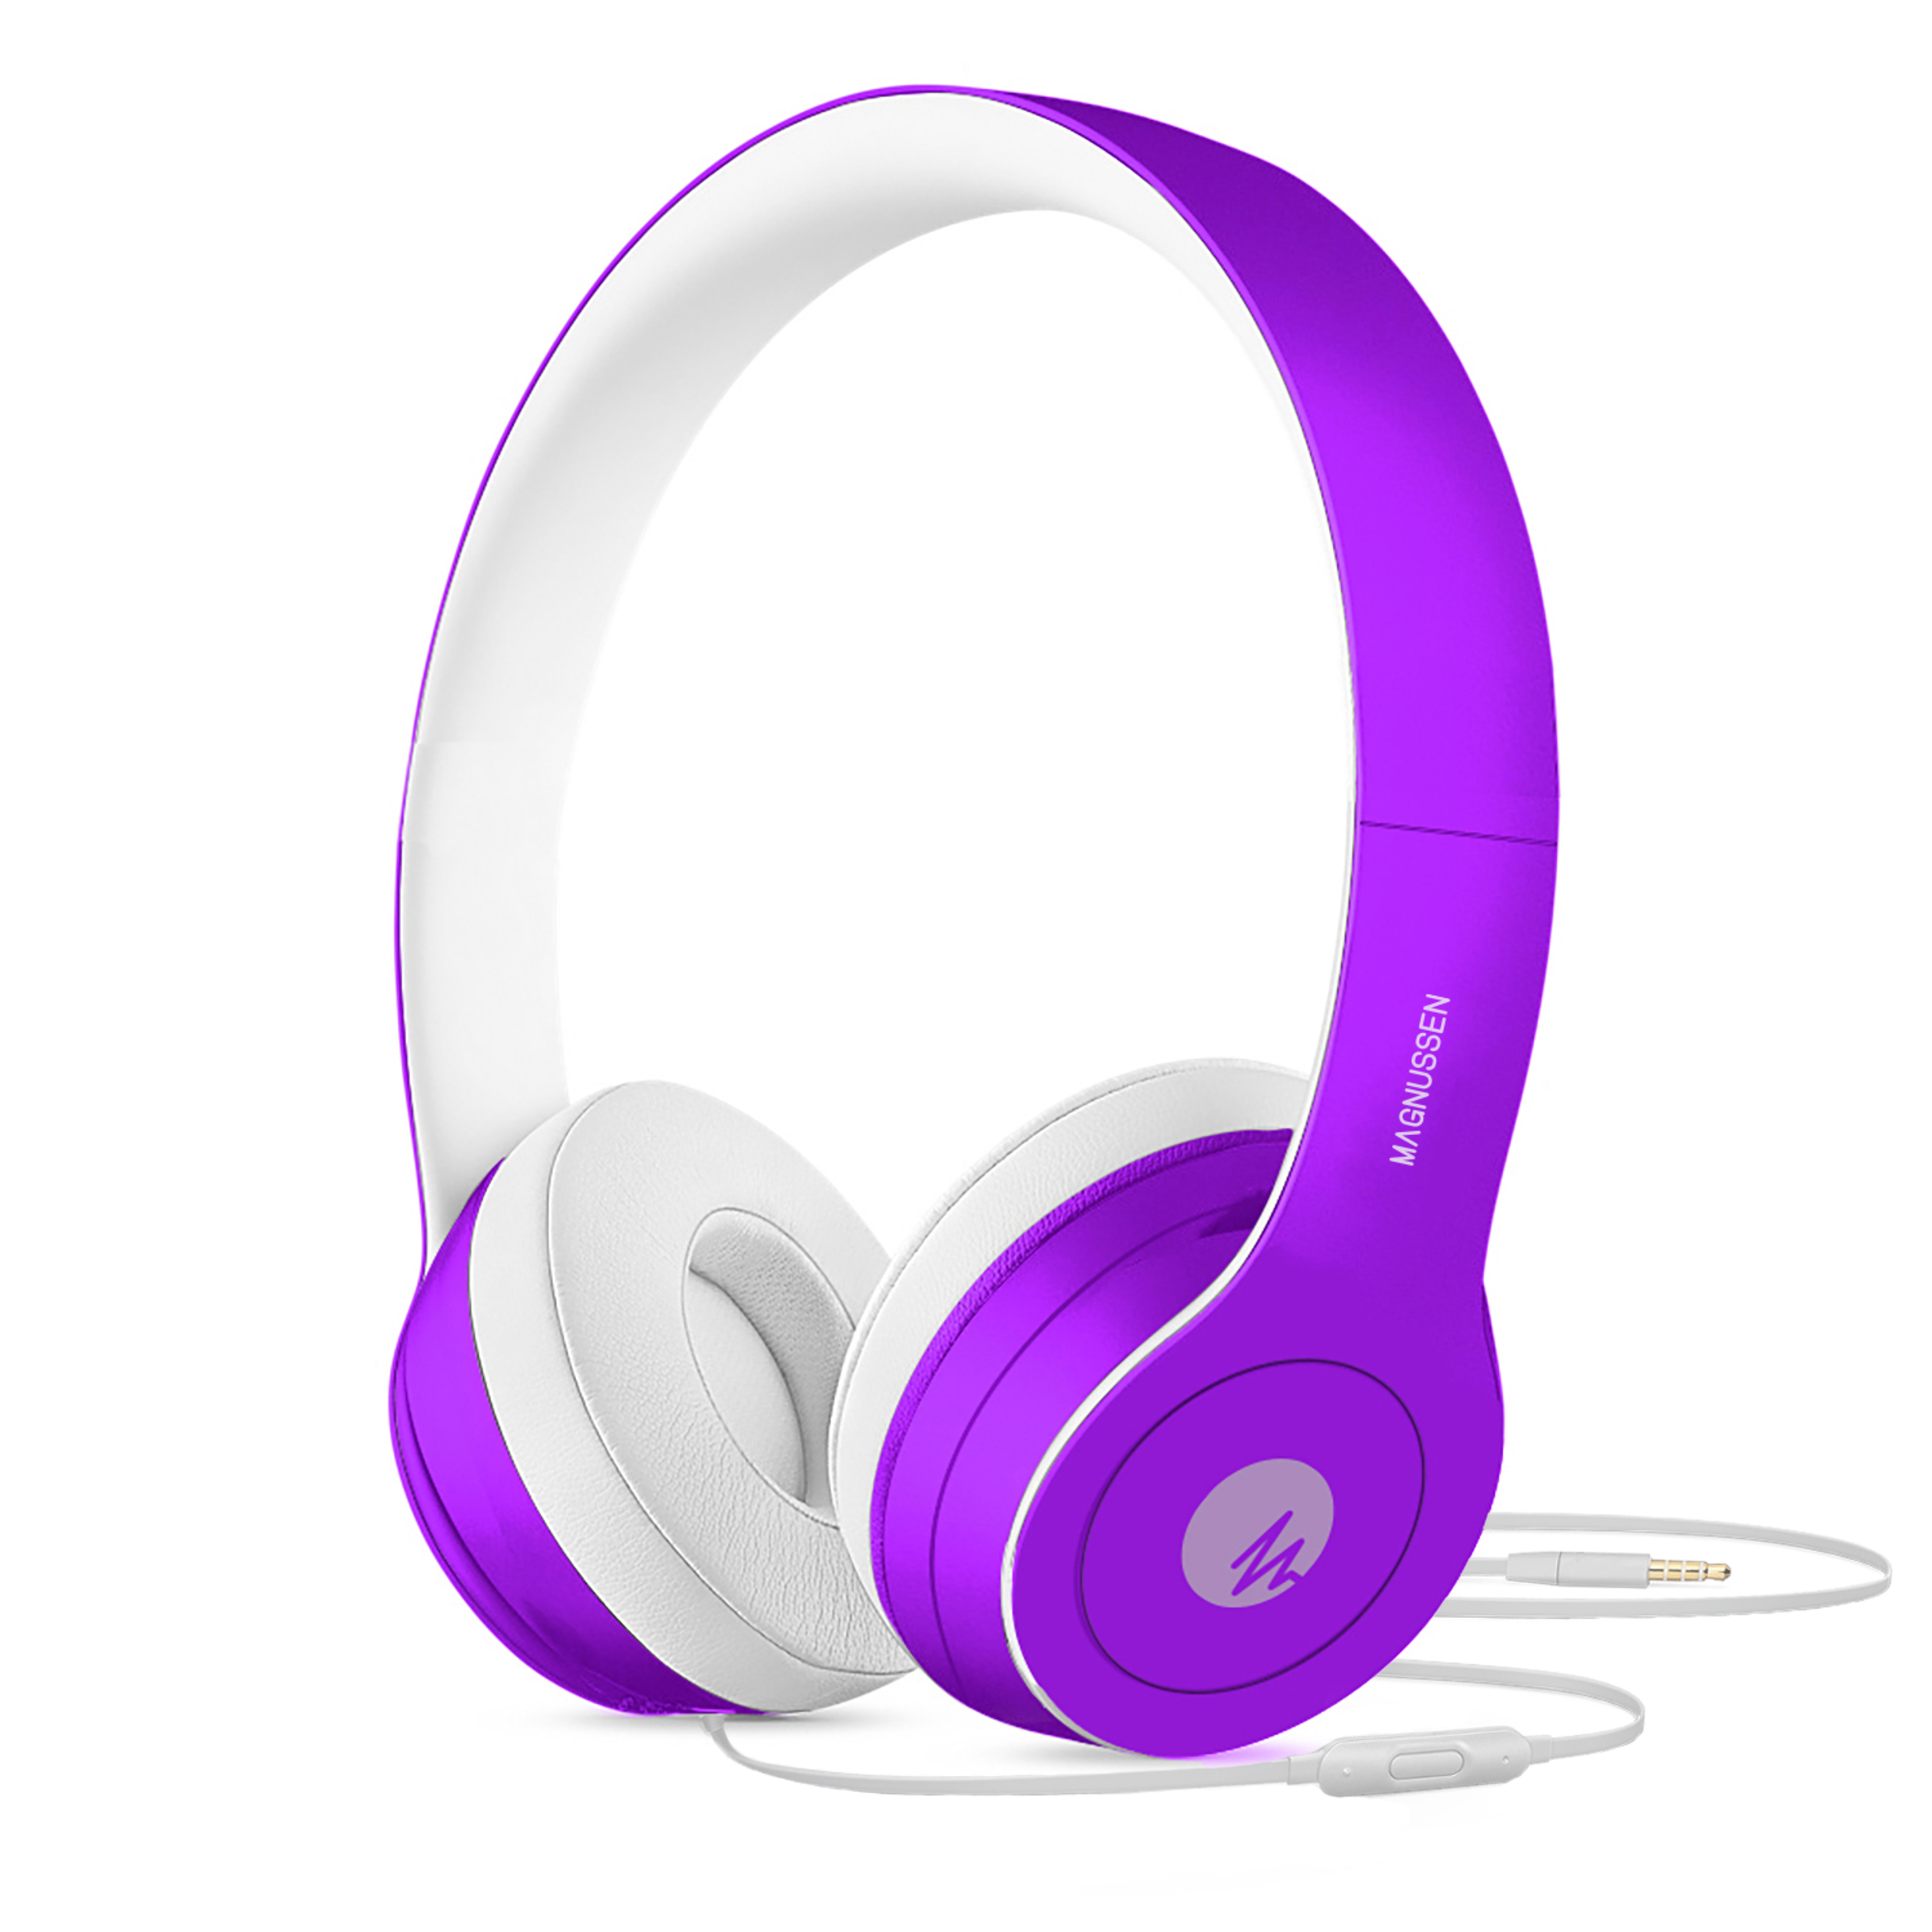 Auriculares Magnussen W1 - purpura - 